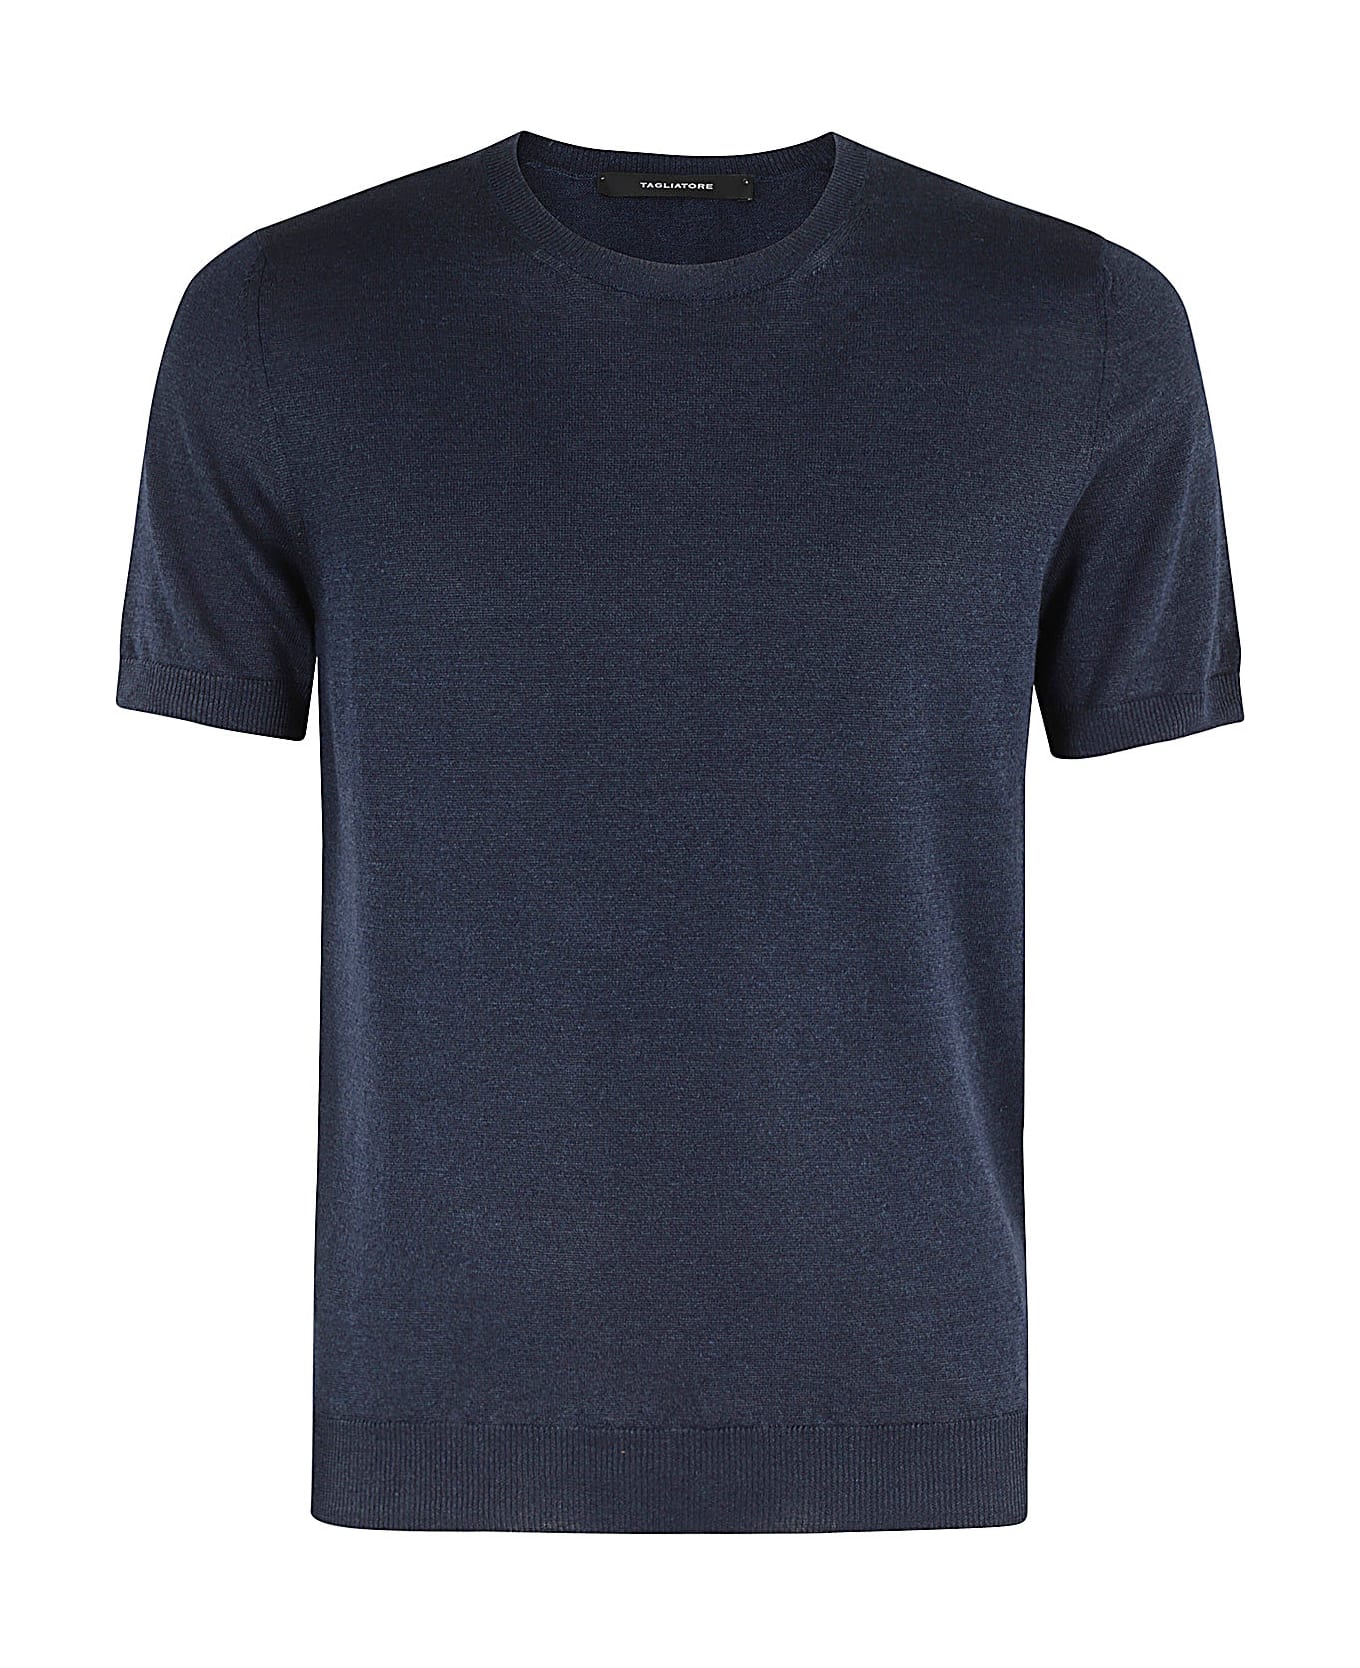 Tagliatore T Shirt - Blu